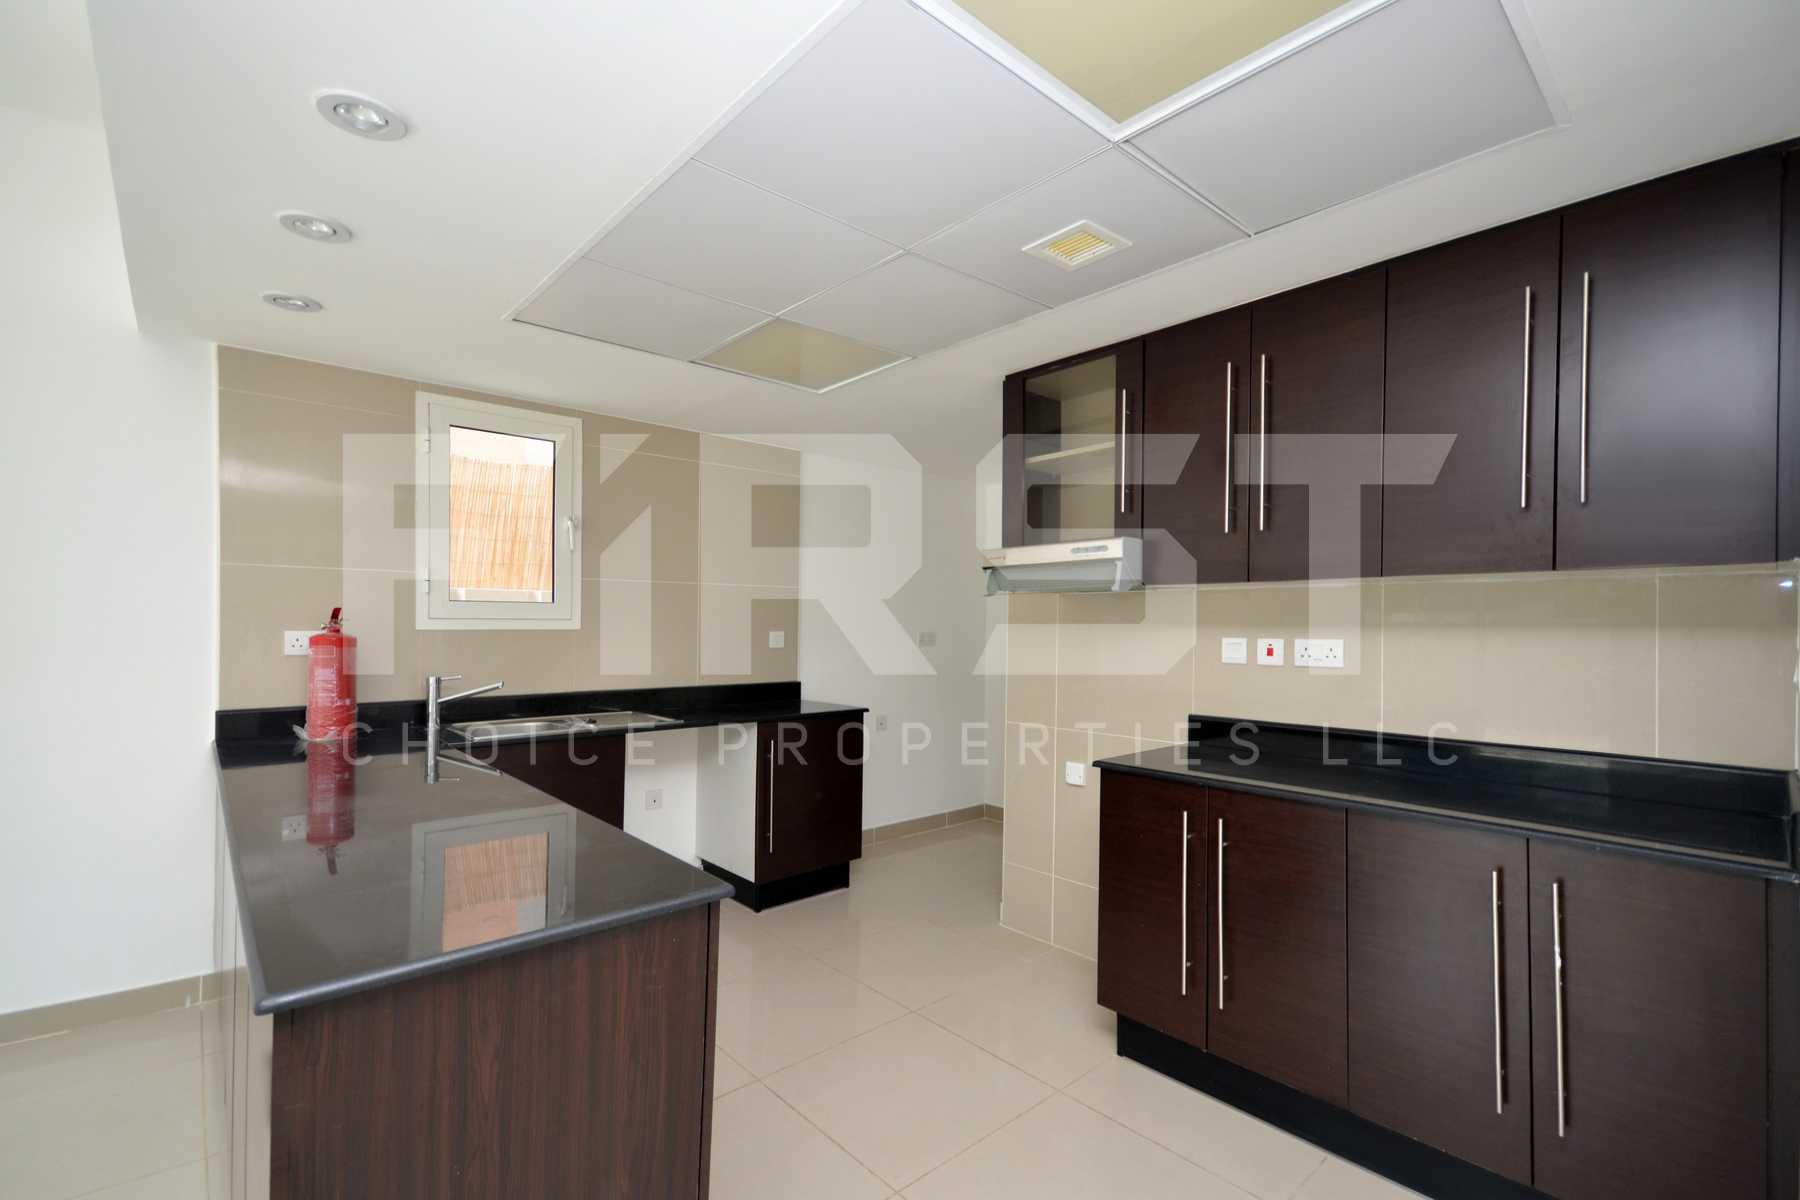 Internal Photo of 4 Bedroom Villa in Al Reef Villas Al Reef Abu Dhabi UAE  2858 sq (8).jpg